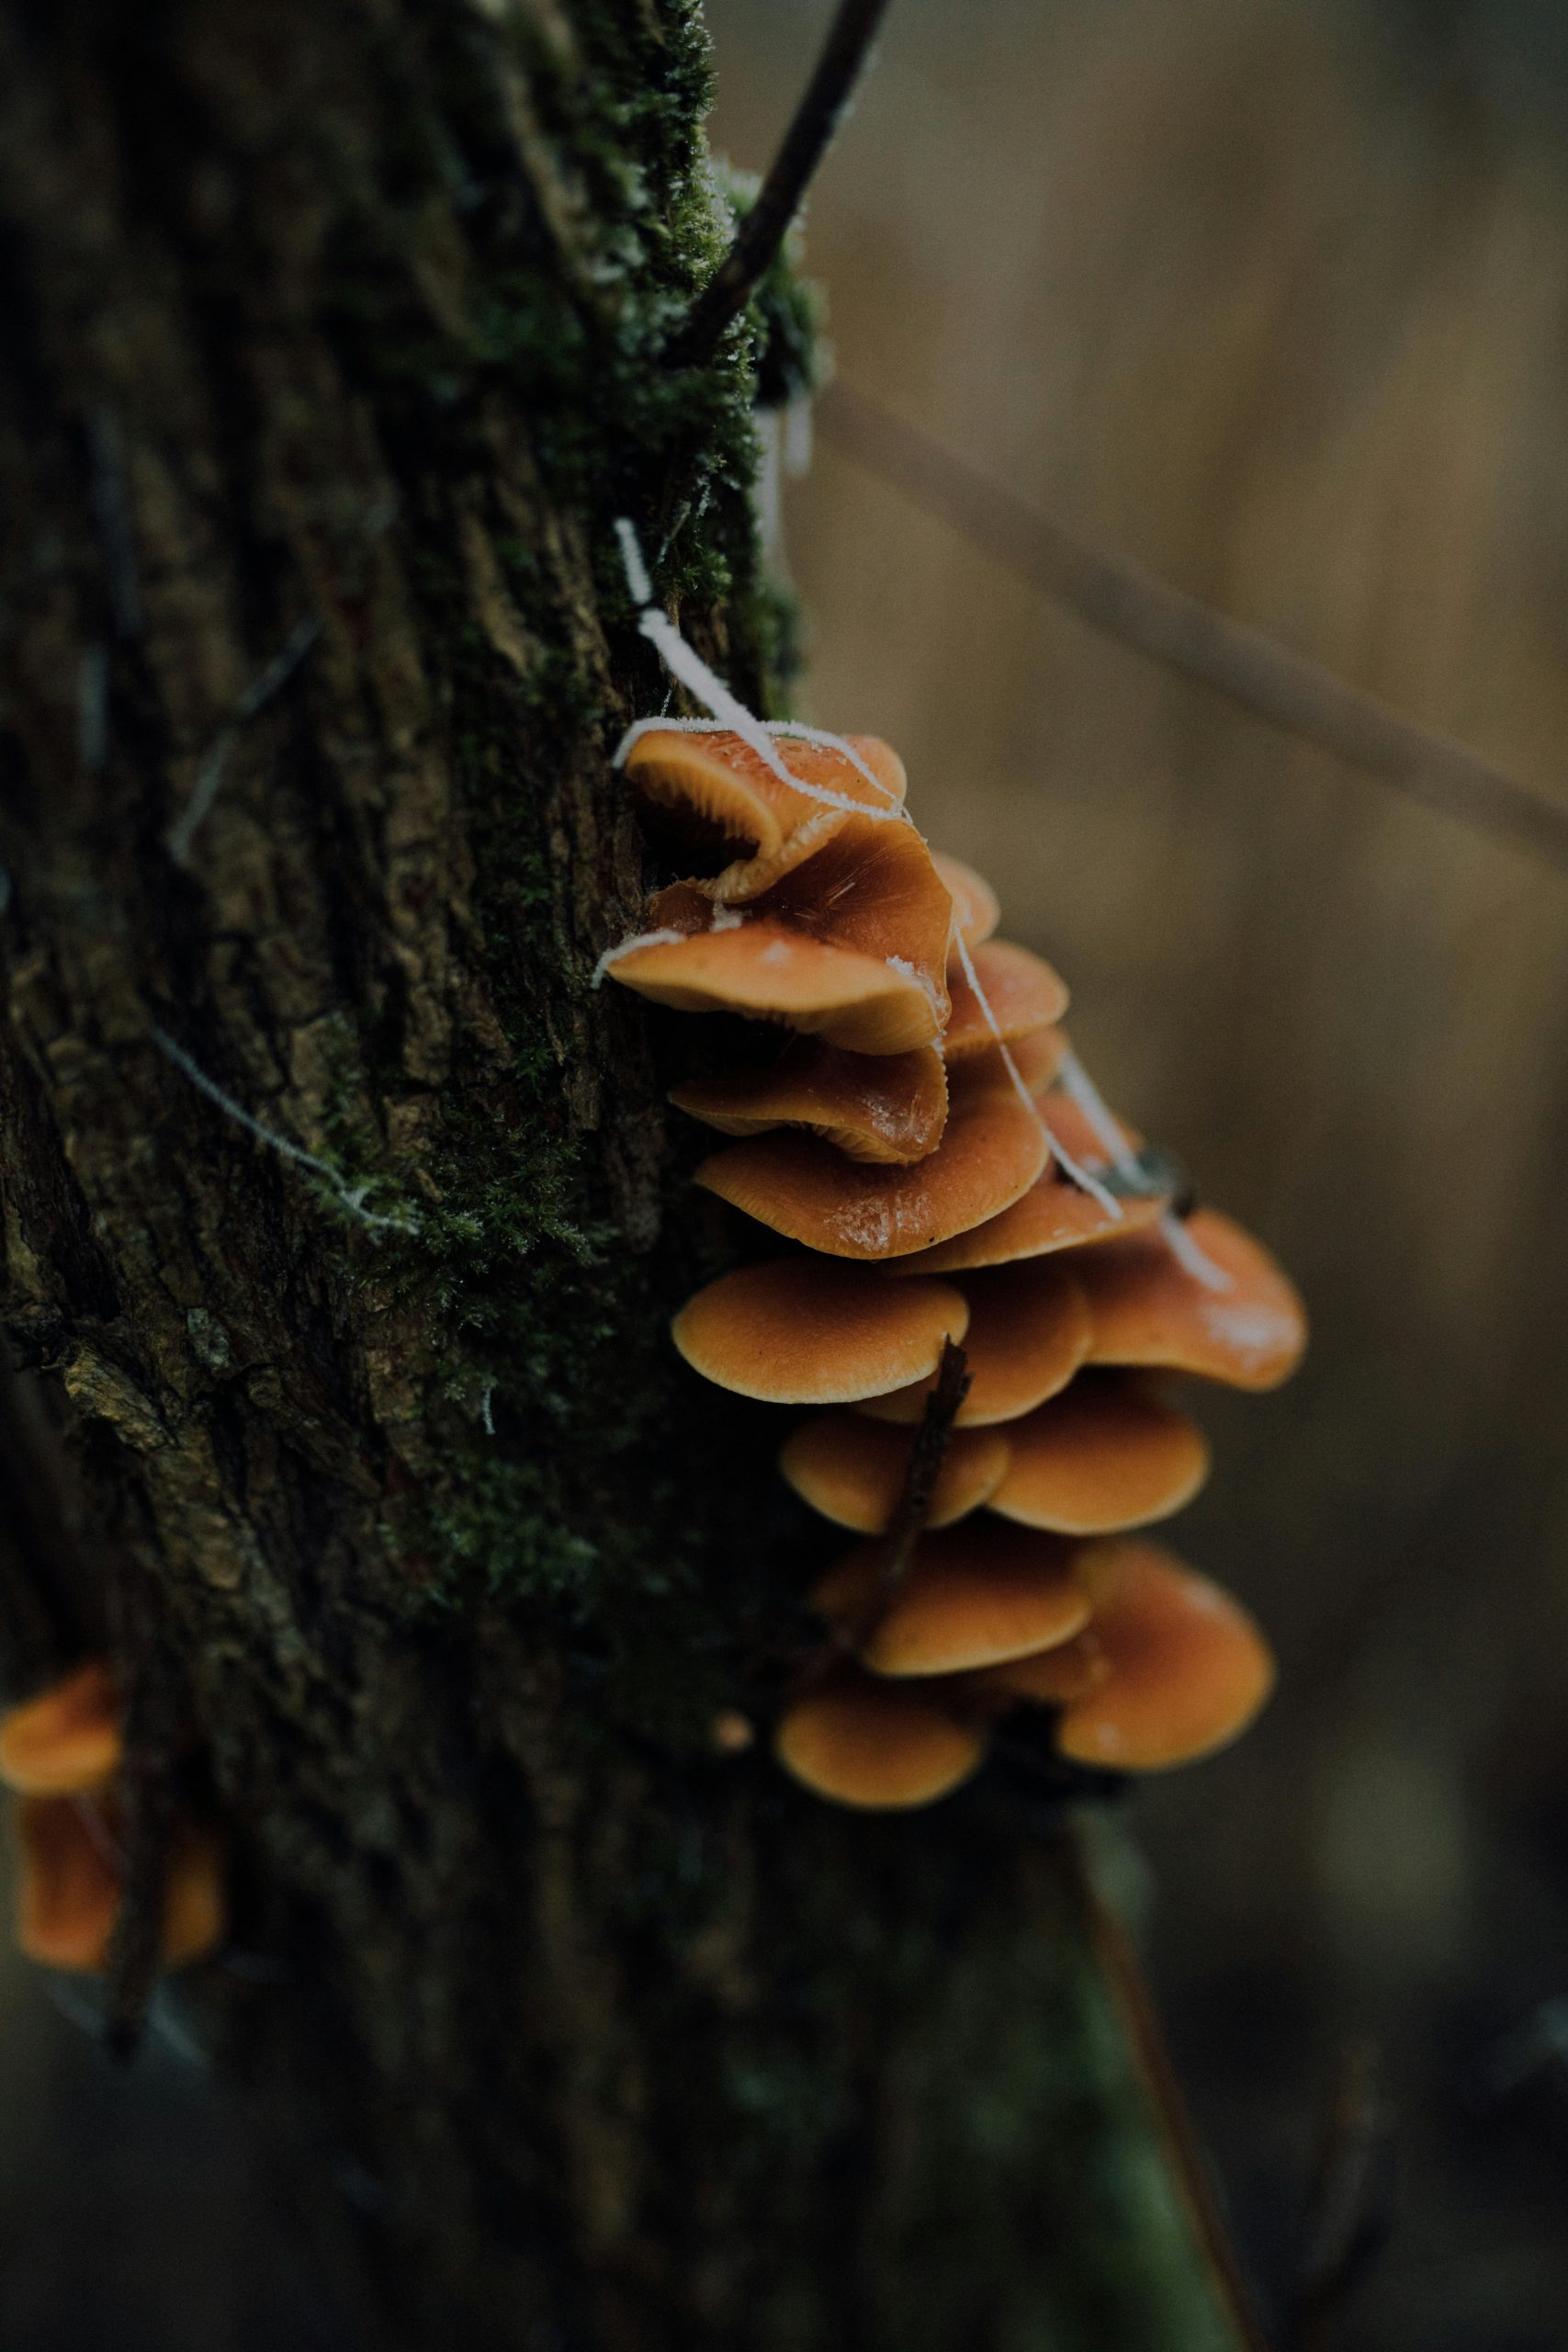 Mushrooms on trees